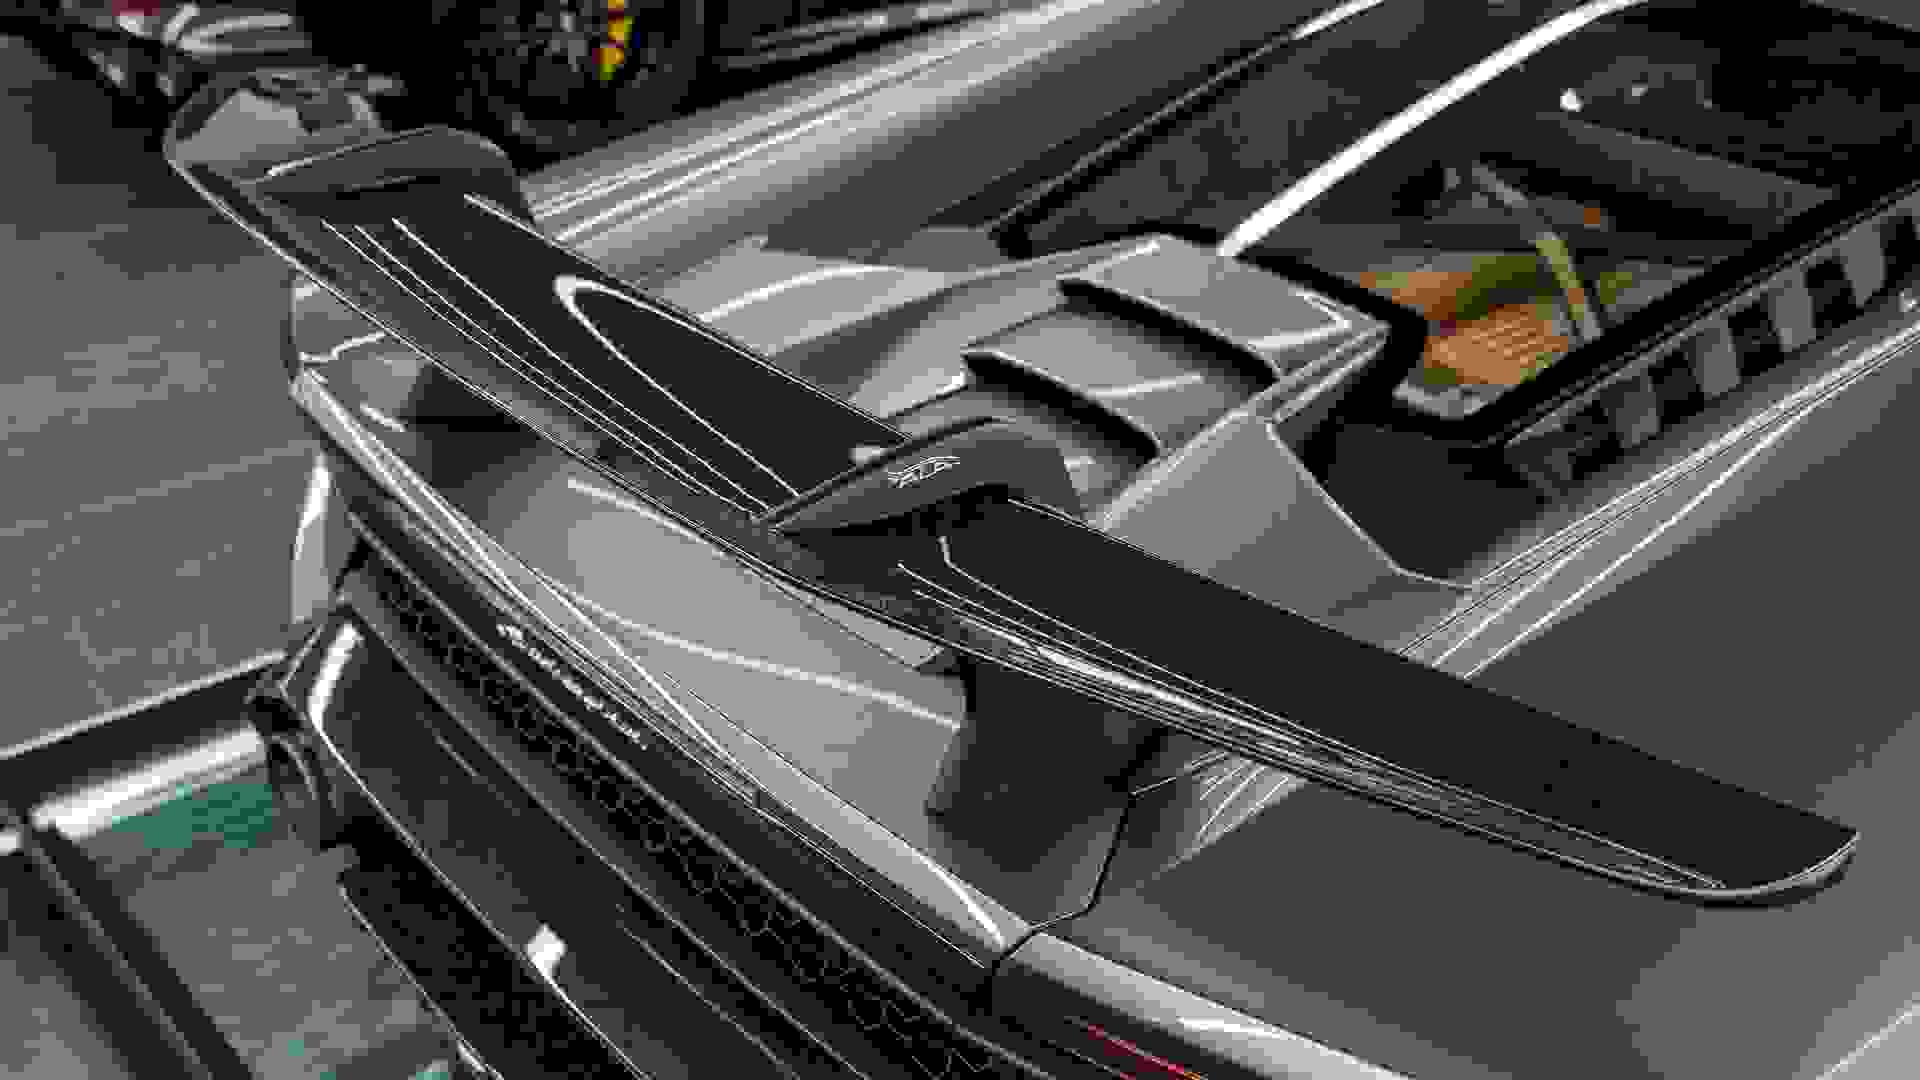 Lamborghini Huracan Photo 7ca4391c-e4fa-464d-b727-59648b2d57aa.jpg